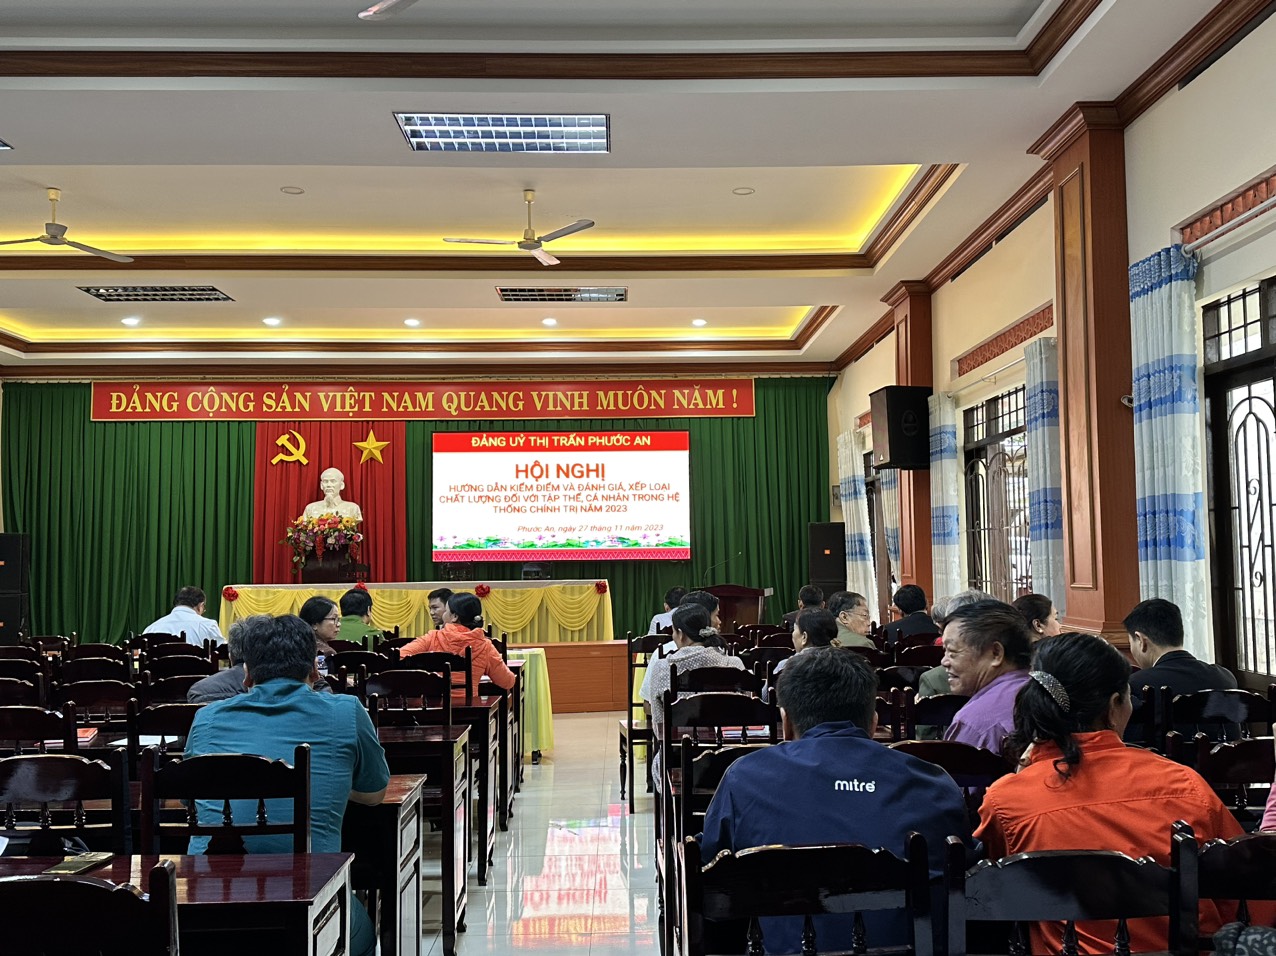 Đảng ủy Thị trấn Phước An tổ chức Hội nghị Hướng dẫn kiểm điểm và đánh giá, xếp loại chất lượng đối với tập thể, cá nhân trong hệ thống chính trị năm 2023.